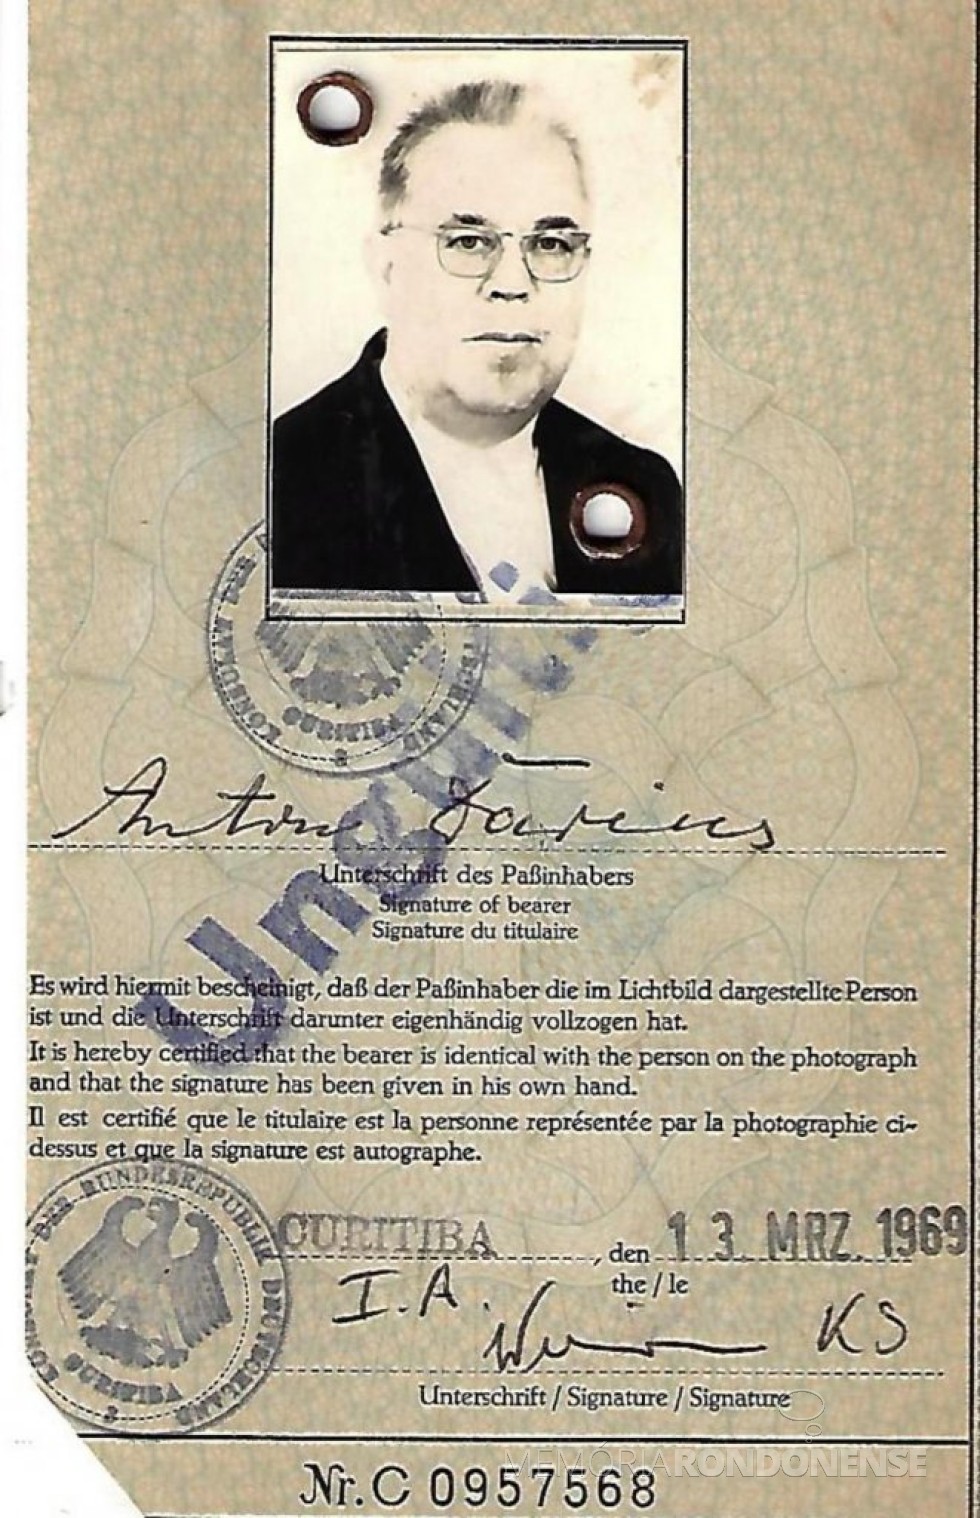 Página de identificação do passaporte alemão do padre Antonio Darius.
Imagem Acervo SVD/Diocese de Toledo - FOTO 9 -